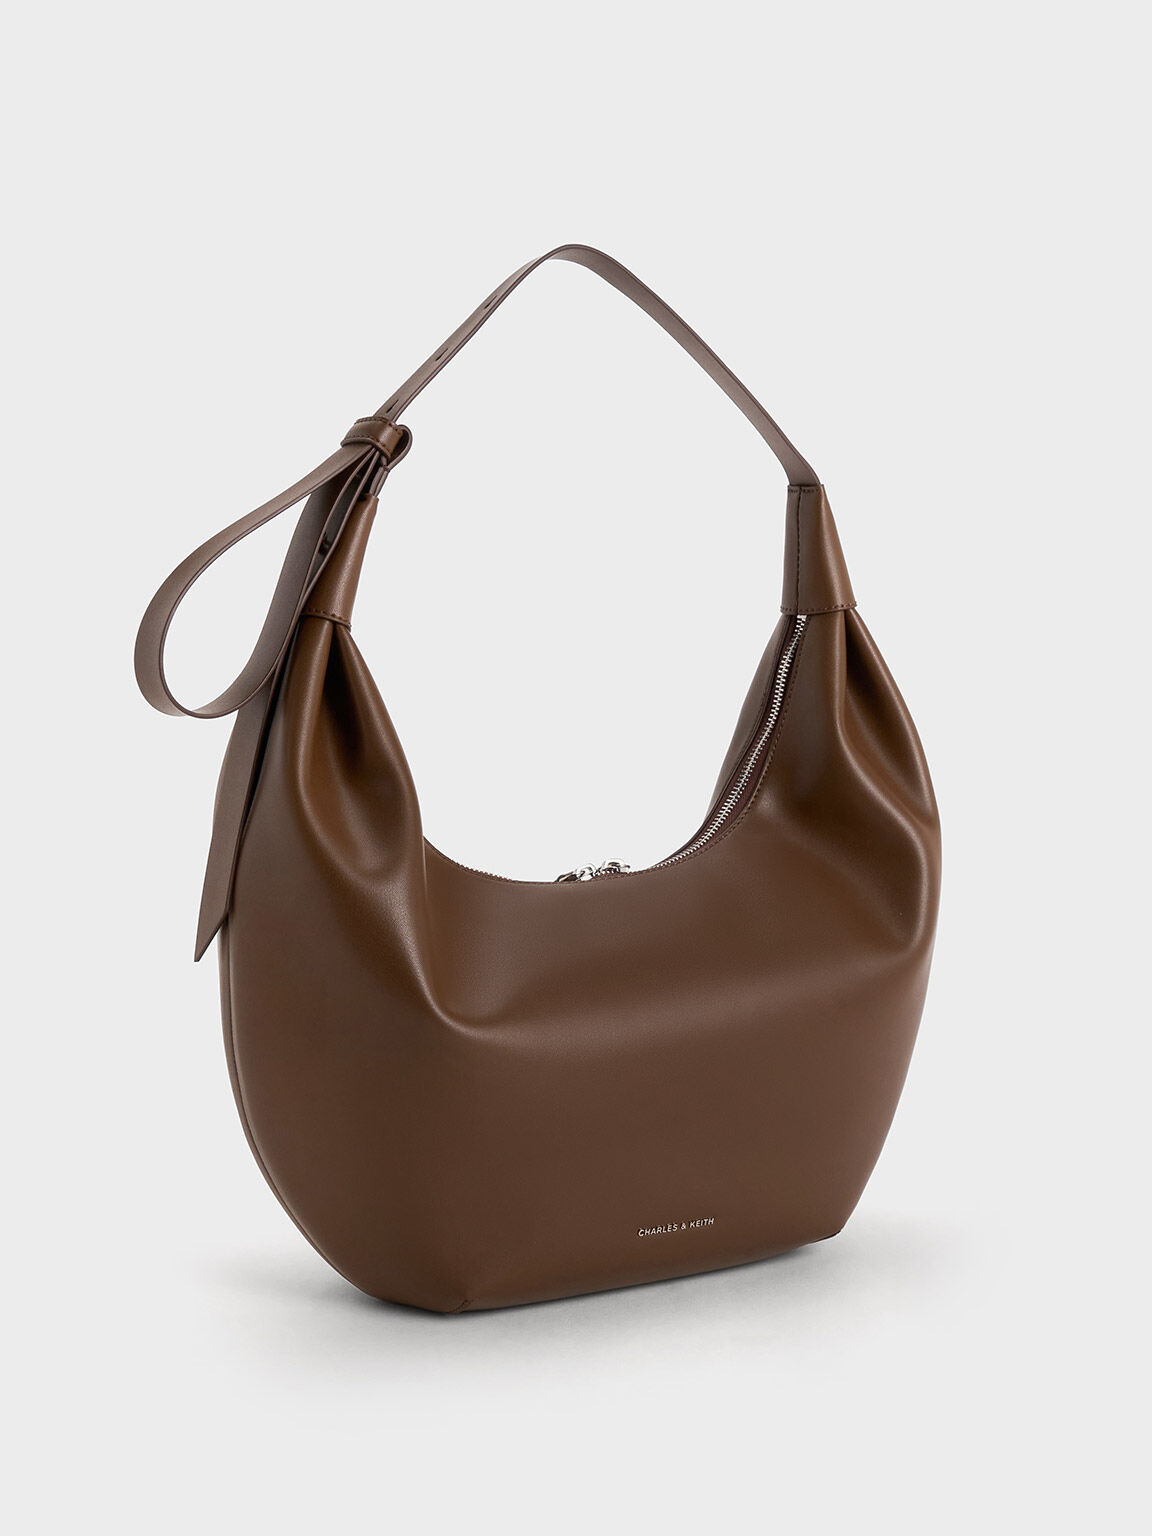 Happiness Upgrade Days Lavie Baggit Sling Bag Purse Best Brand Purse Under  500 Heavy Discount On Handbag And Purse | सबसे सस्ती डील: अमेजन सेल में 80%  डिस्काउंट पर खरीदें पर्स और हैंडबैग!